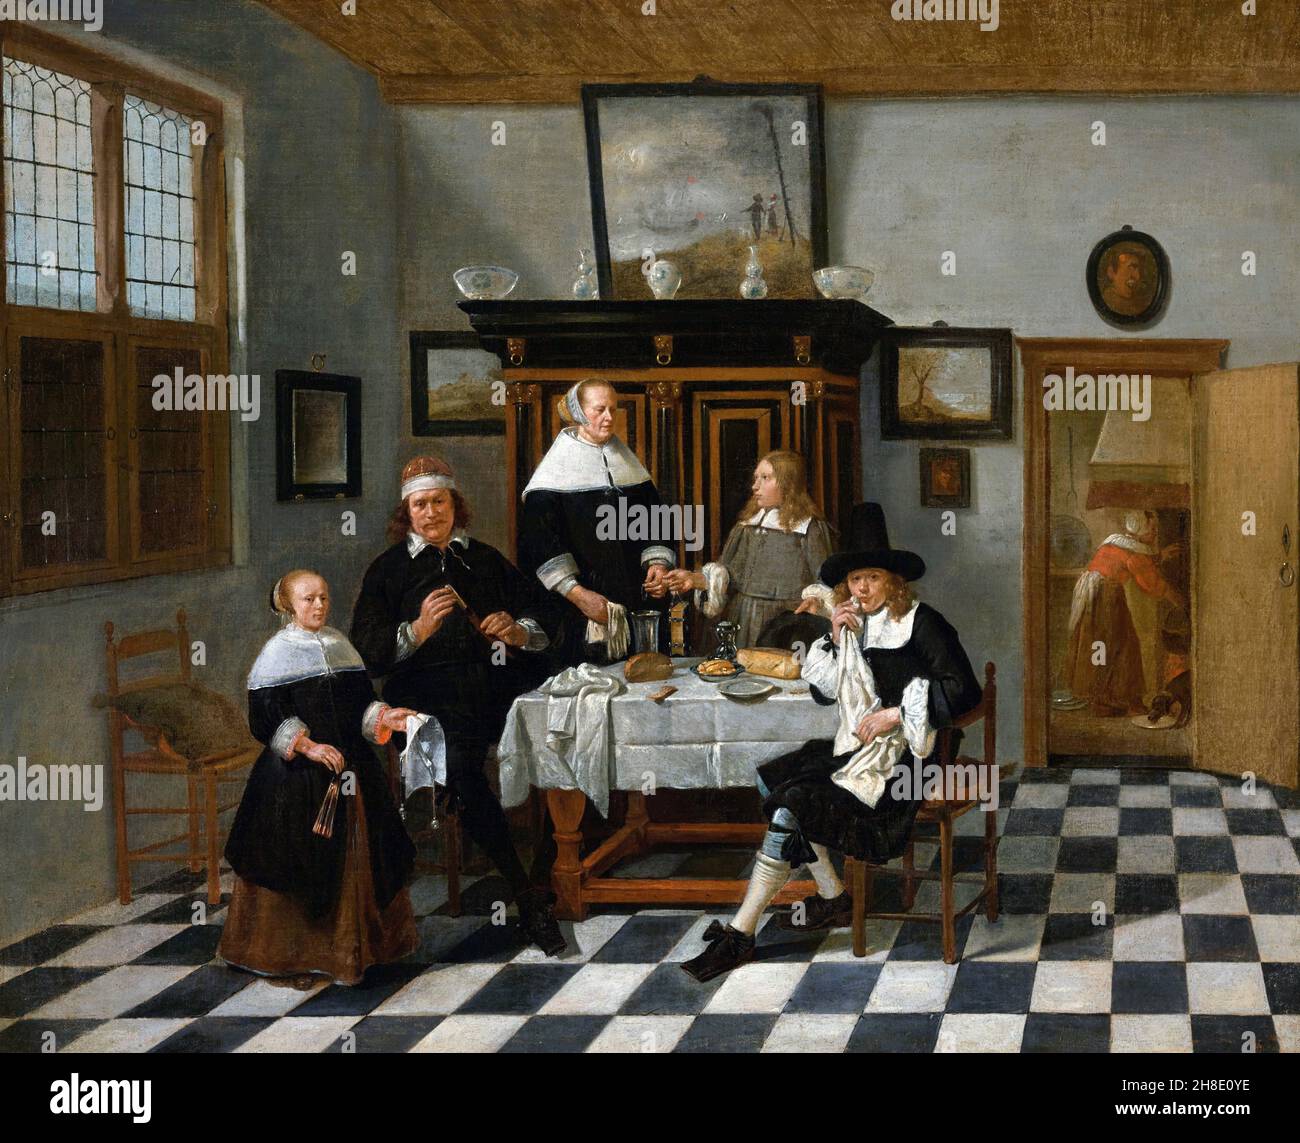 Groupe familial dans un intérieur par l'artiste baroque néerlandais Quirijn Gerritsz van Brekelenkam (1622/29-1669/79), huile sur toile, c.1658-60 Banque D'Images